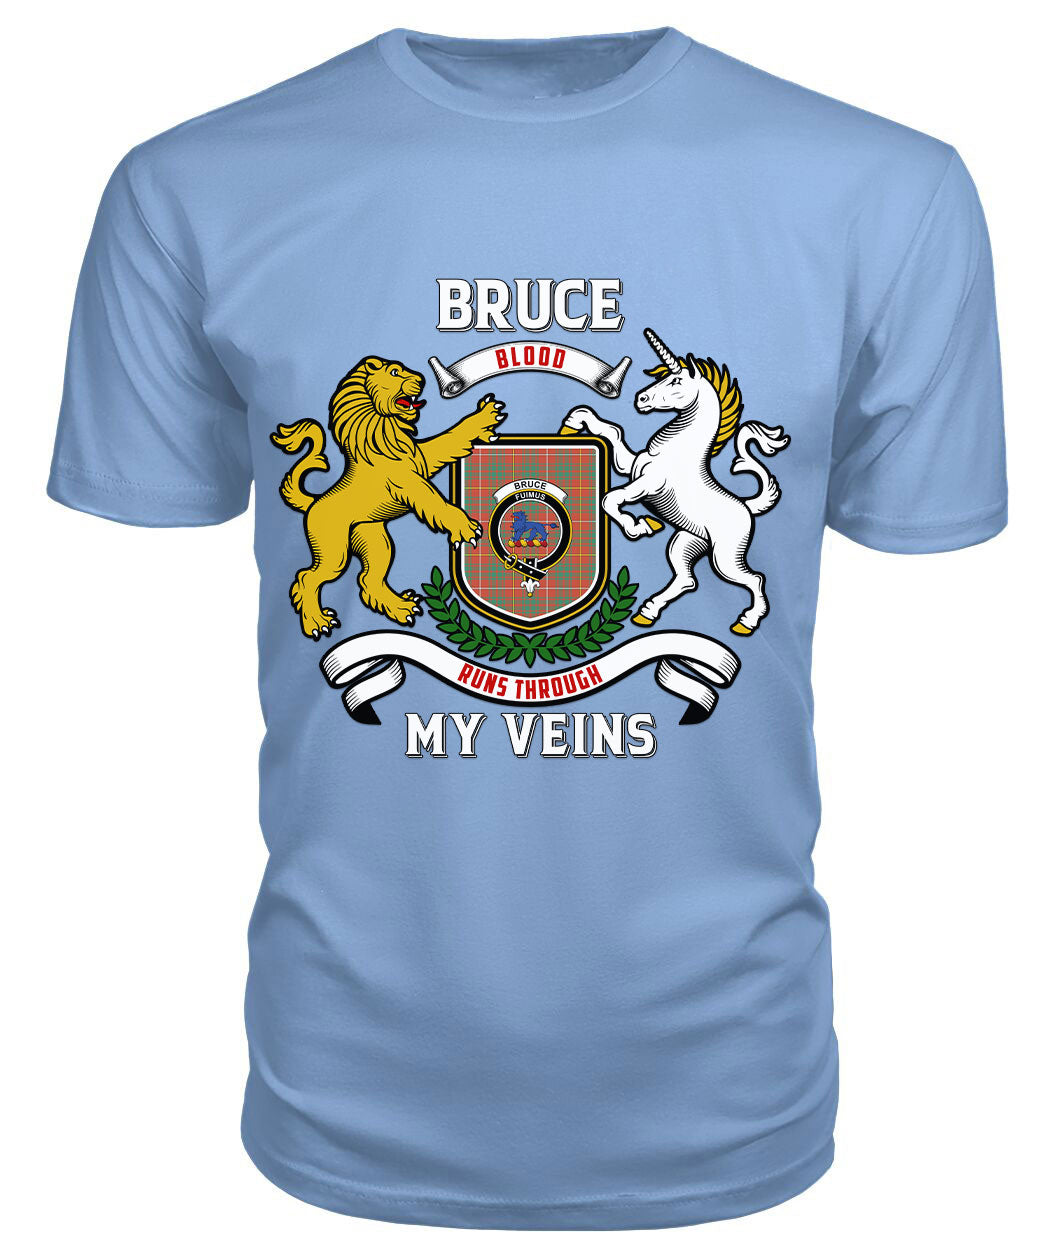 Bruce Ancient Tartan Crest 2D T-shirt - Blood Runs Through My Veins Style